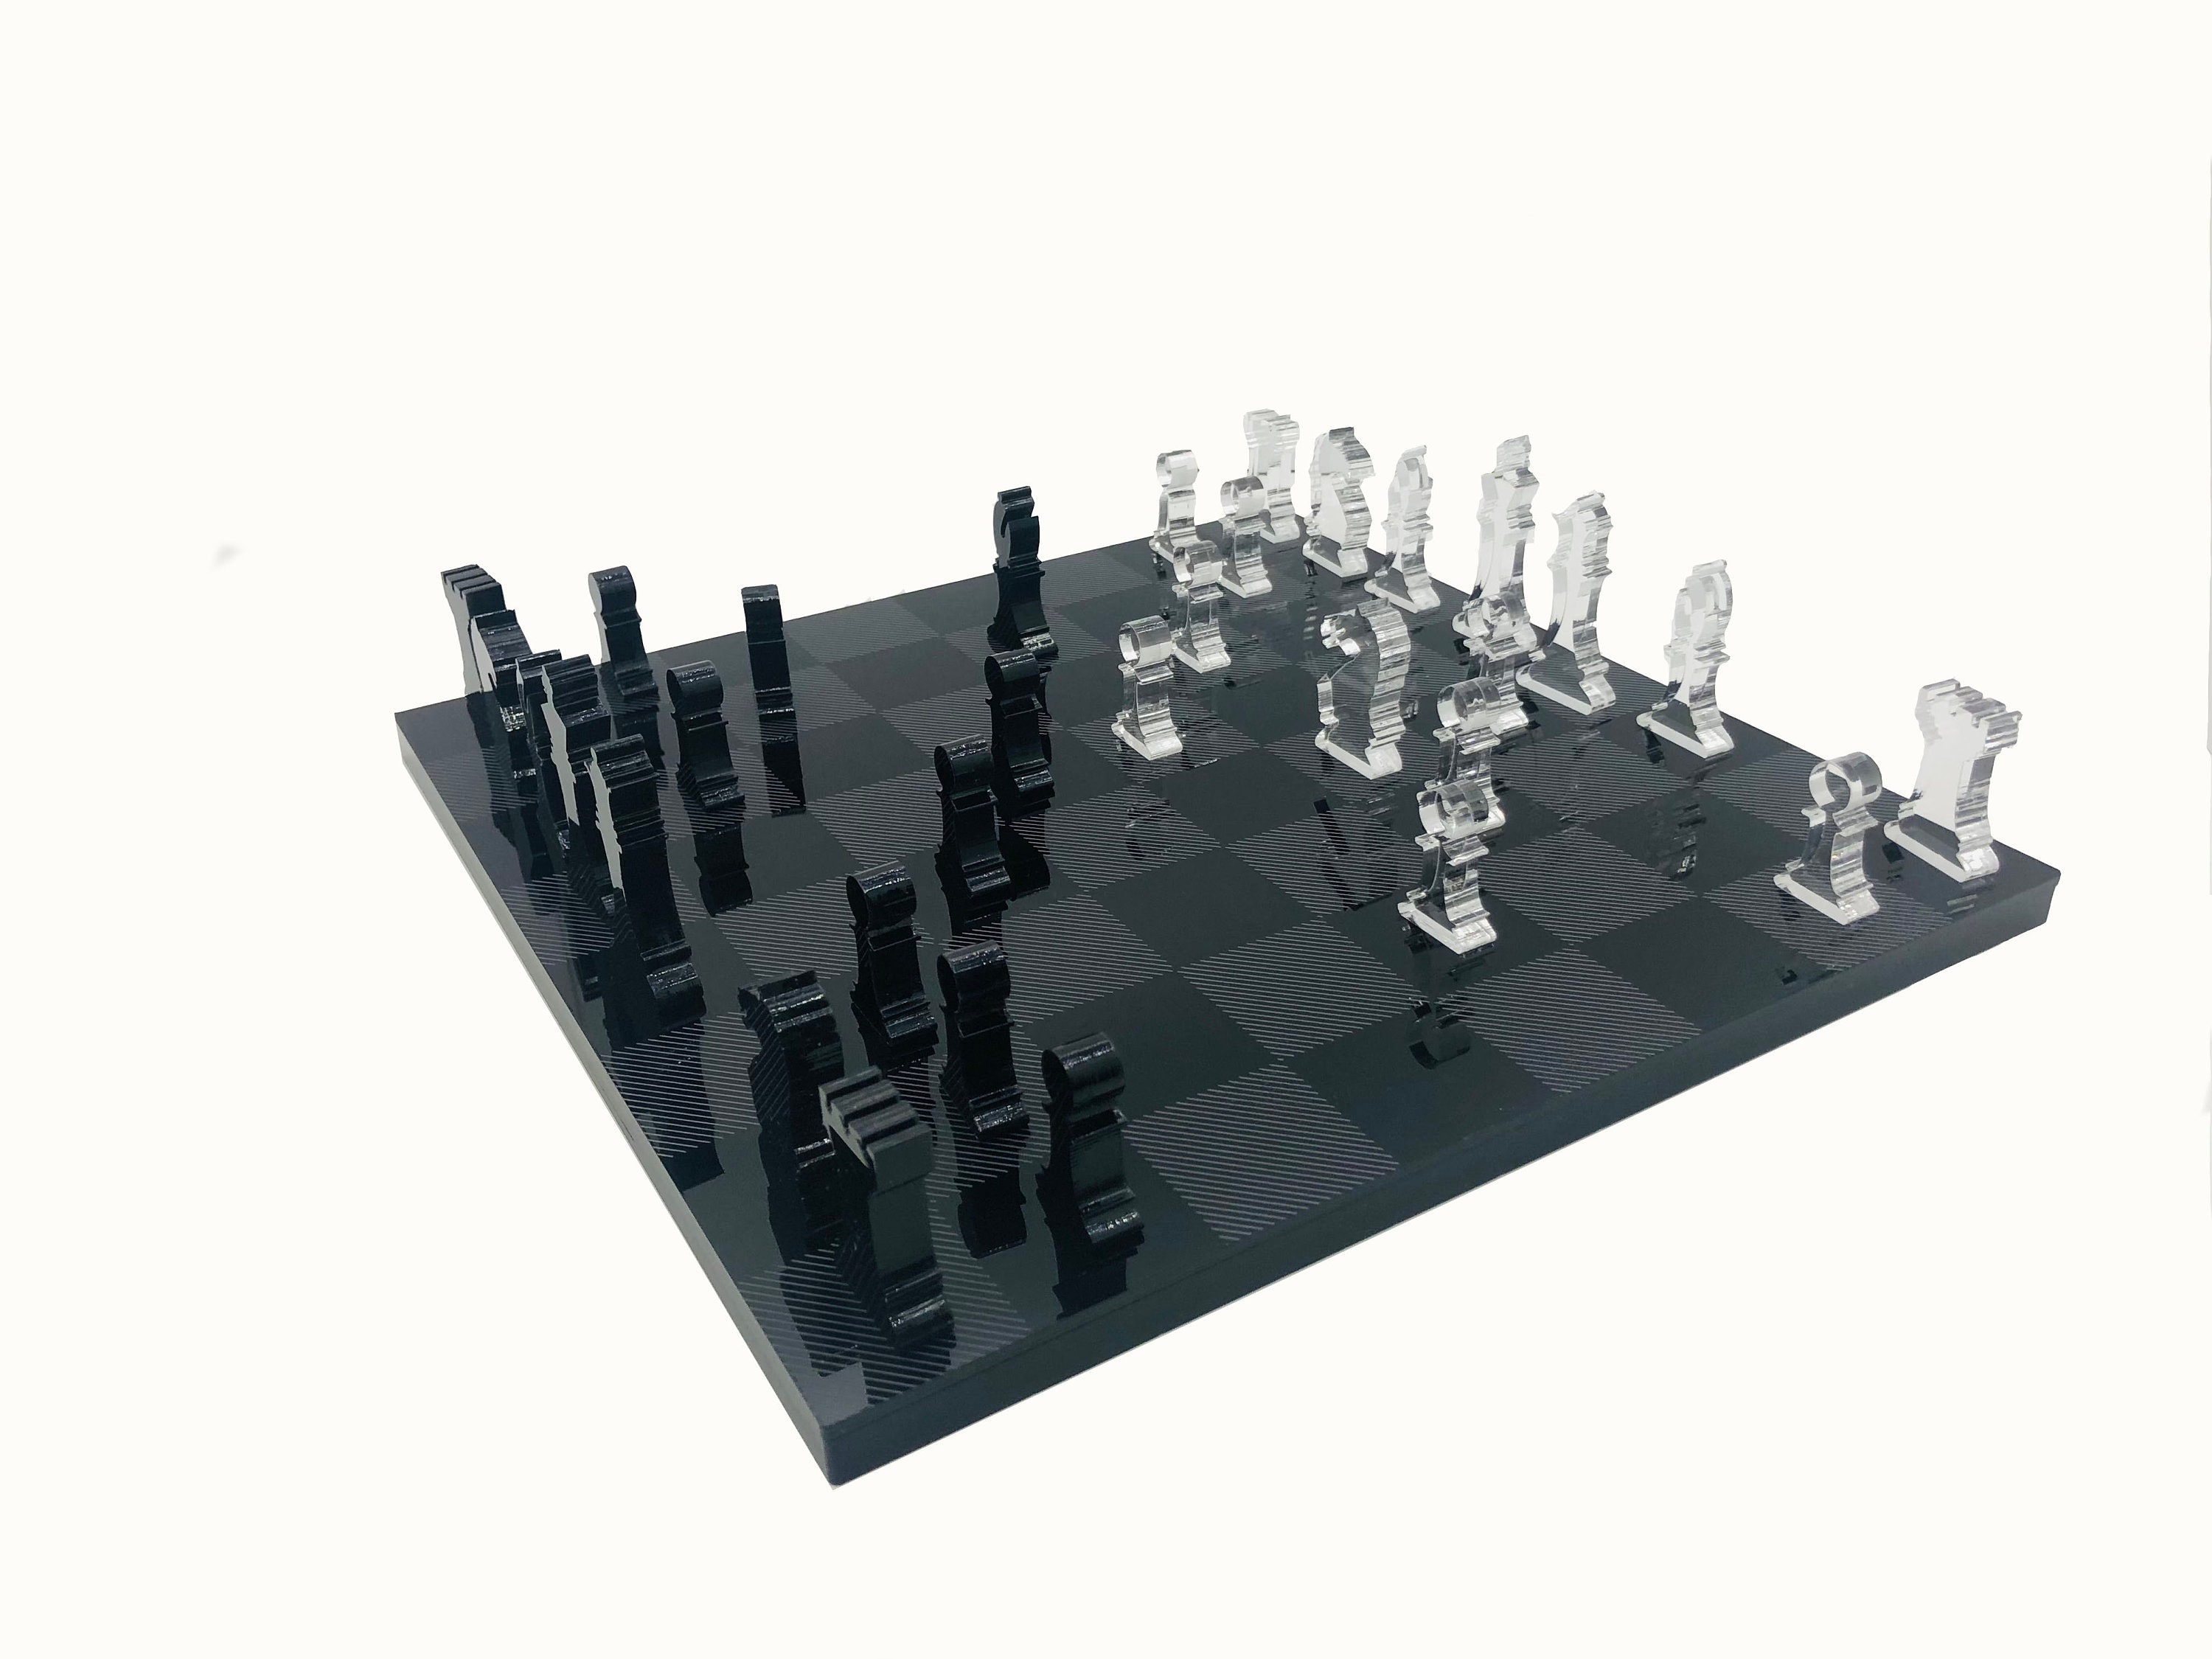  Chessnut Juego de ajedrez electrónico de aire, un